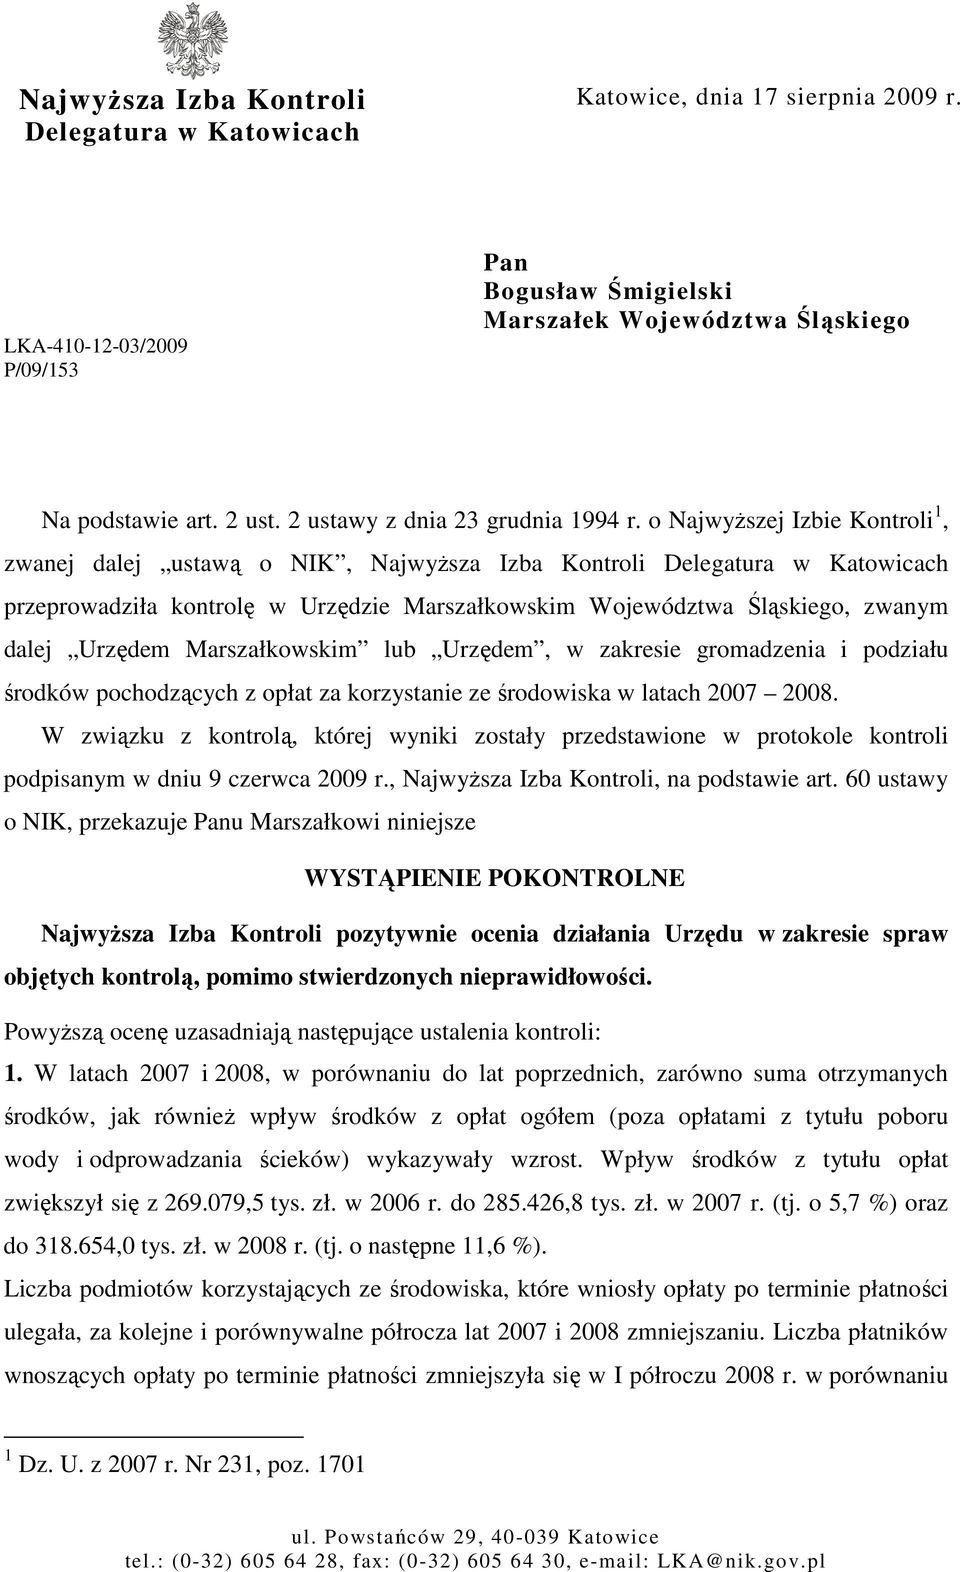 o NajwyŜszej Izbie Kontroli 1, zwanej dalej ustawą o NIK, NajwyŜsza Izba Kontroli Delegatura w Katowicach przeprowadziła kontrolę w Urzędzie Marszałkowskim Województwa Śląskiego, zwanym dalej Urzędem